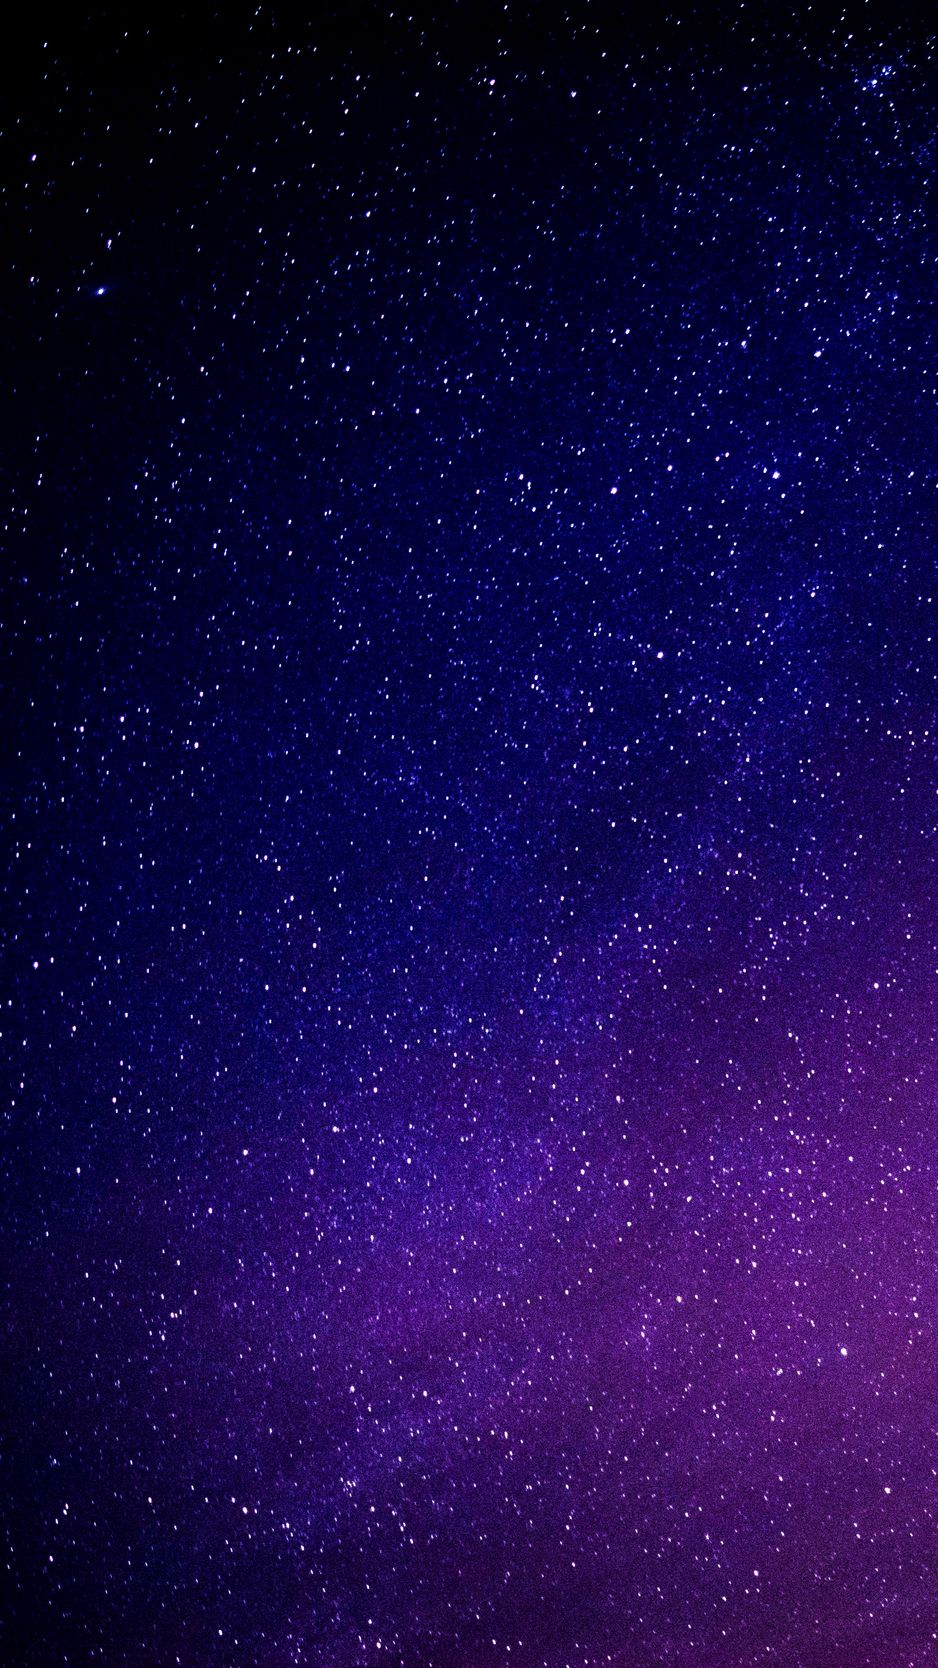 Starry sky, galaxy, glitter, night - chỉ với những từ đơn giản như thế, bạn có thể hiểu được cảm giác thư giãn khi download wallpaper 938x1668 - Night. Màu sắc tươi sáng đa dạng và kết hợp hài hòa giữa các yếu tố sẽ giúp bạn thư giãn và trải nghiệm những giây phút độc đáo. 